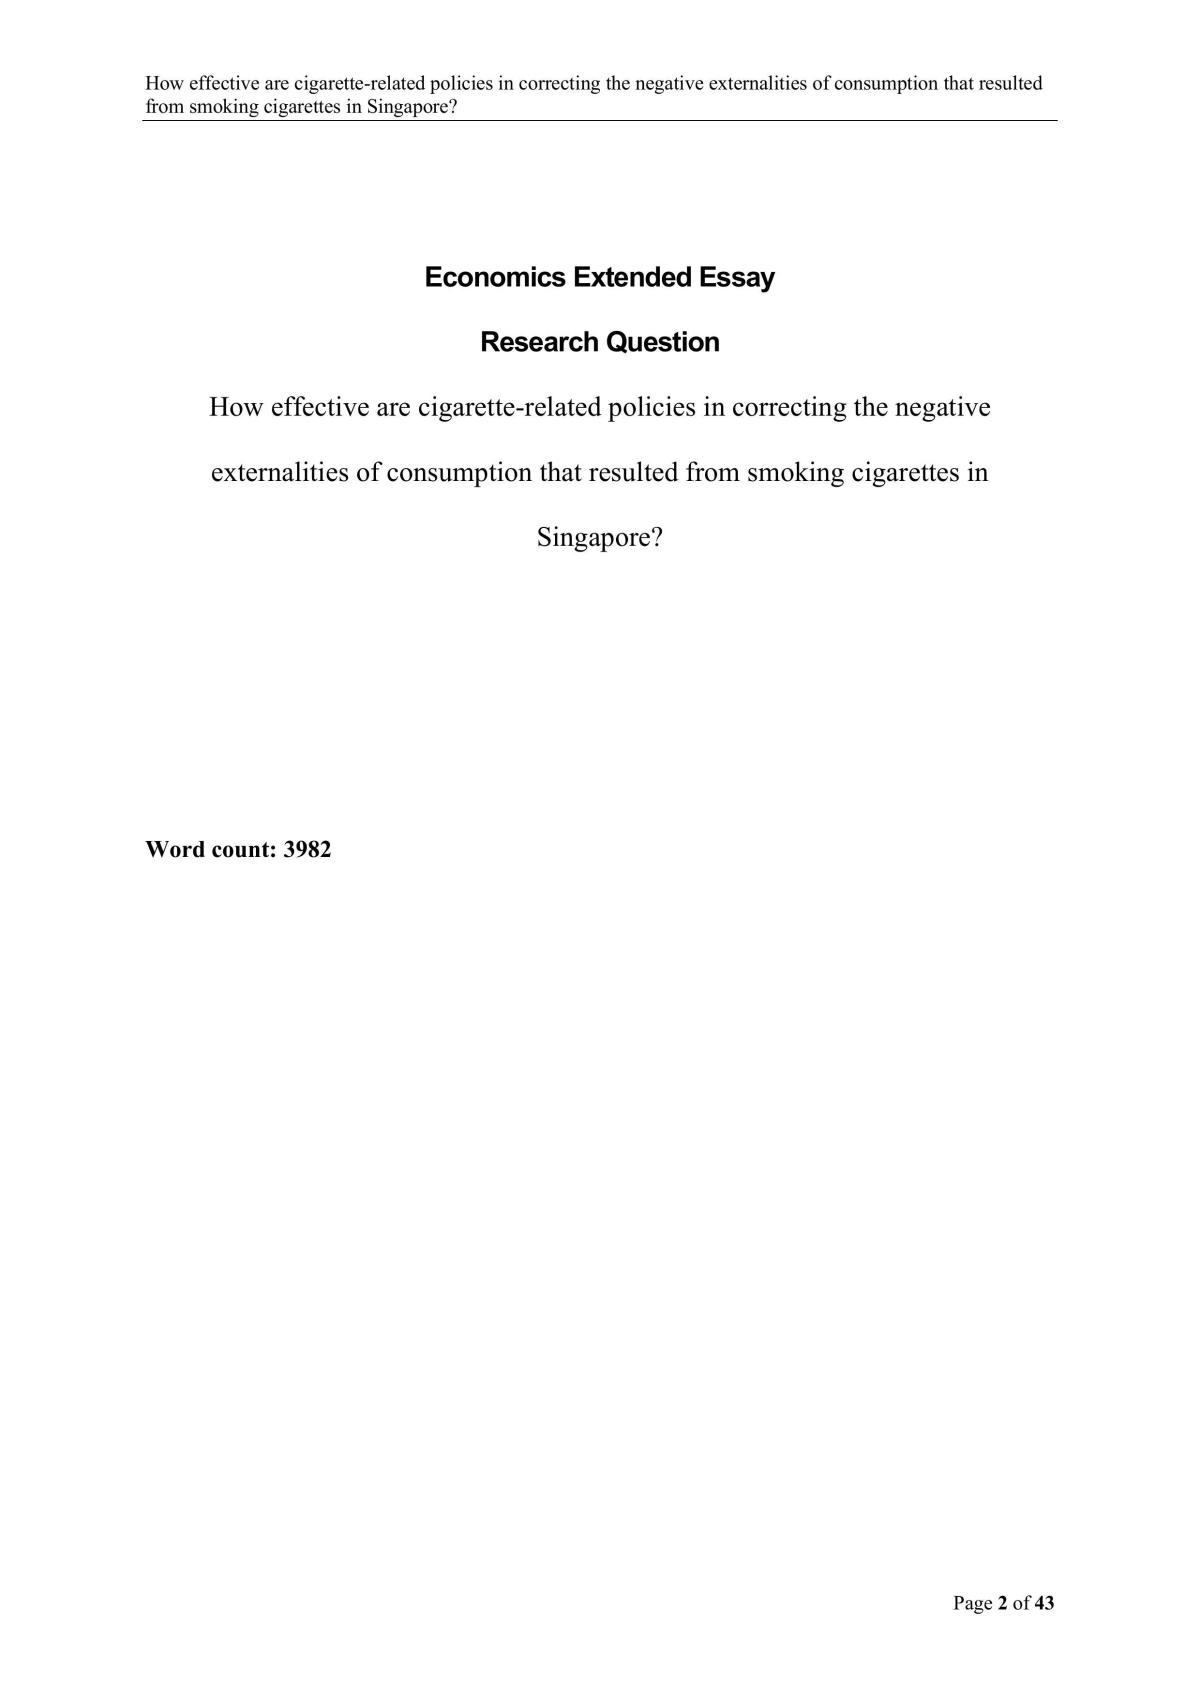 economics extended essay questions